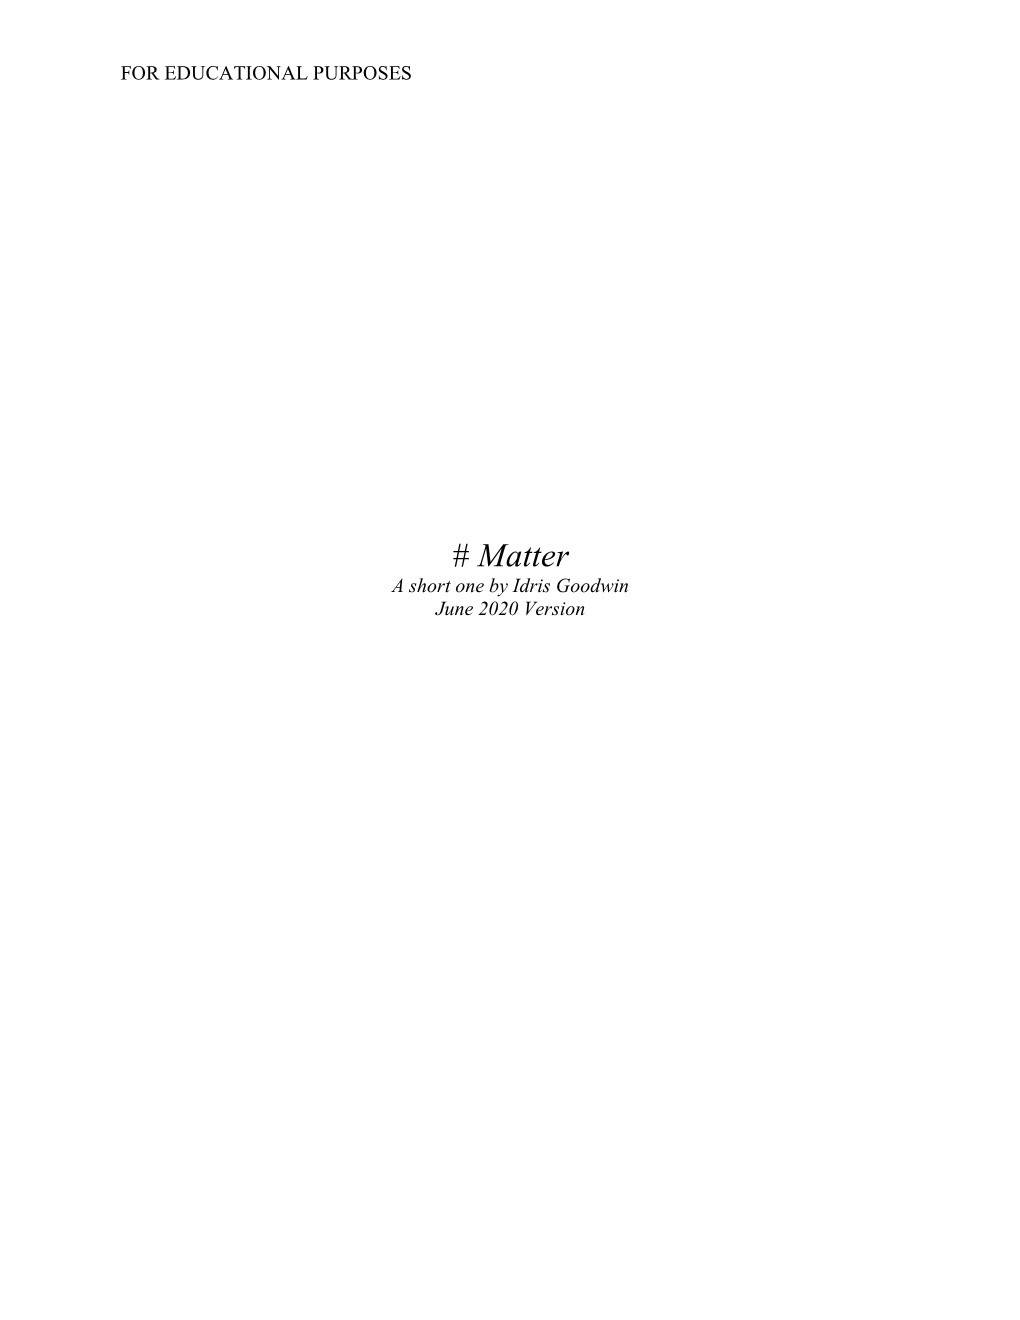 Matter a Short One by Idris Goodwin June 2020 Version